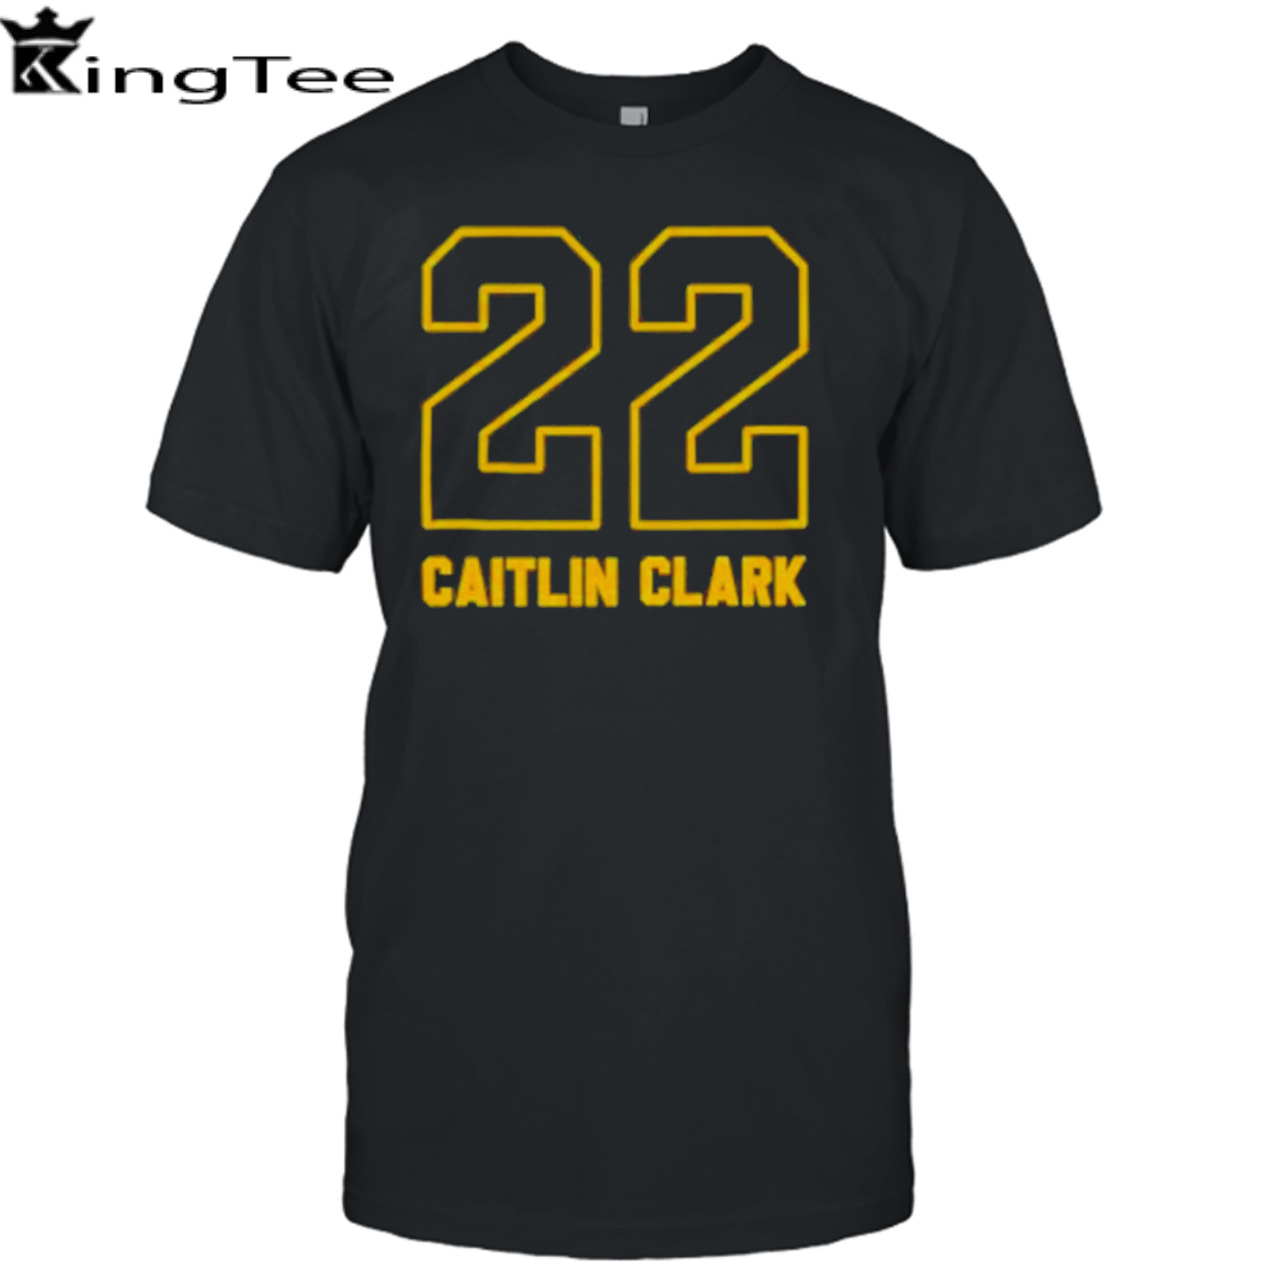 Caitlin clark v3 caitlin clark 22 shirt